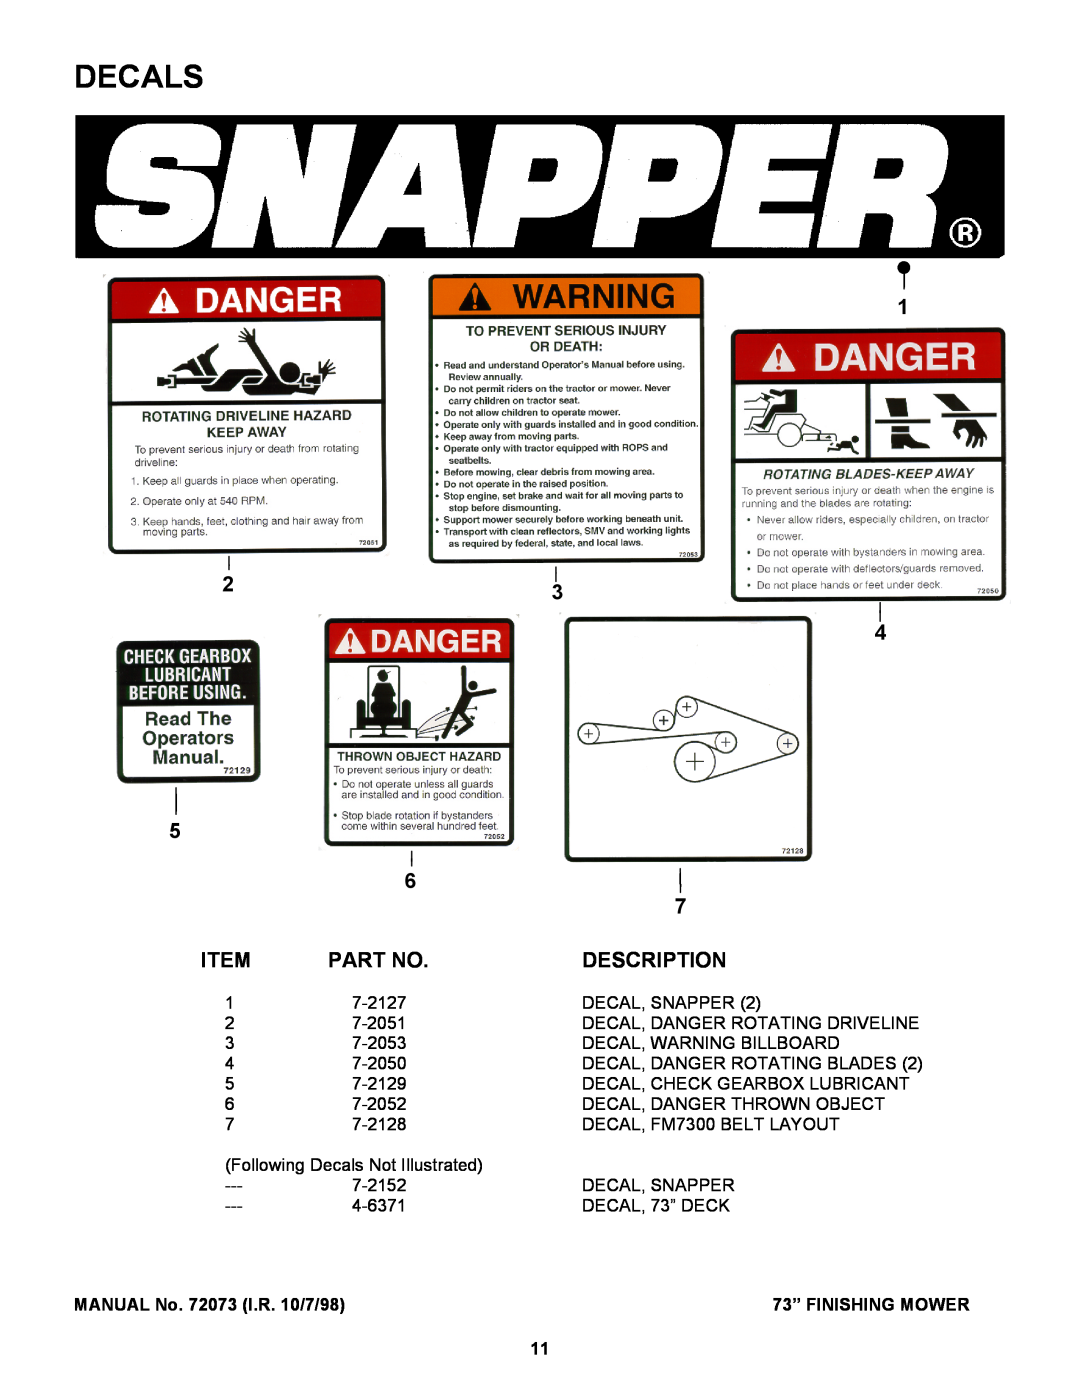 Snapper Finishing Mower manual Decals, 4 5 6, Item, Part No, Description 